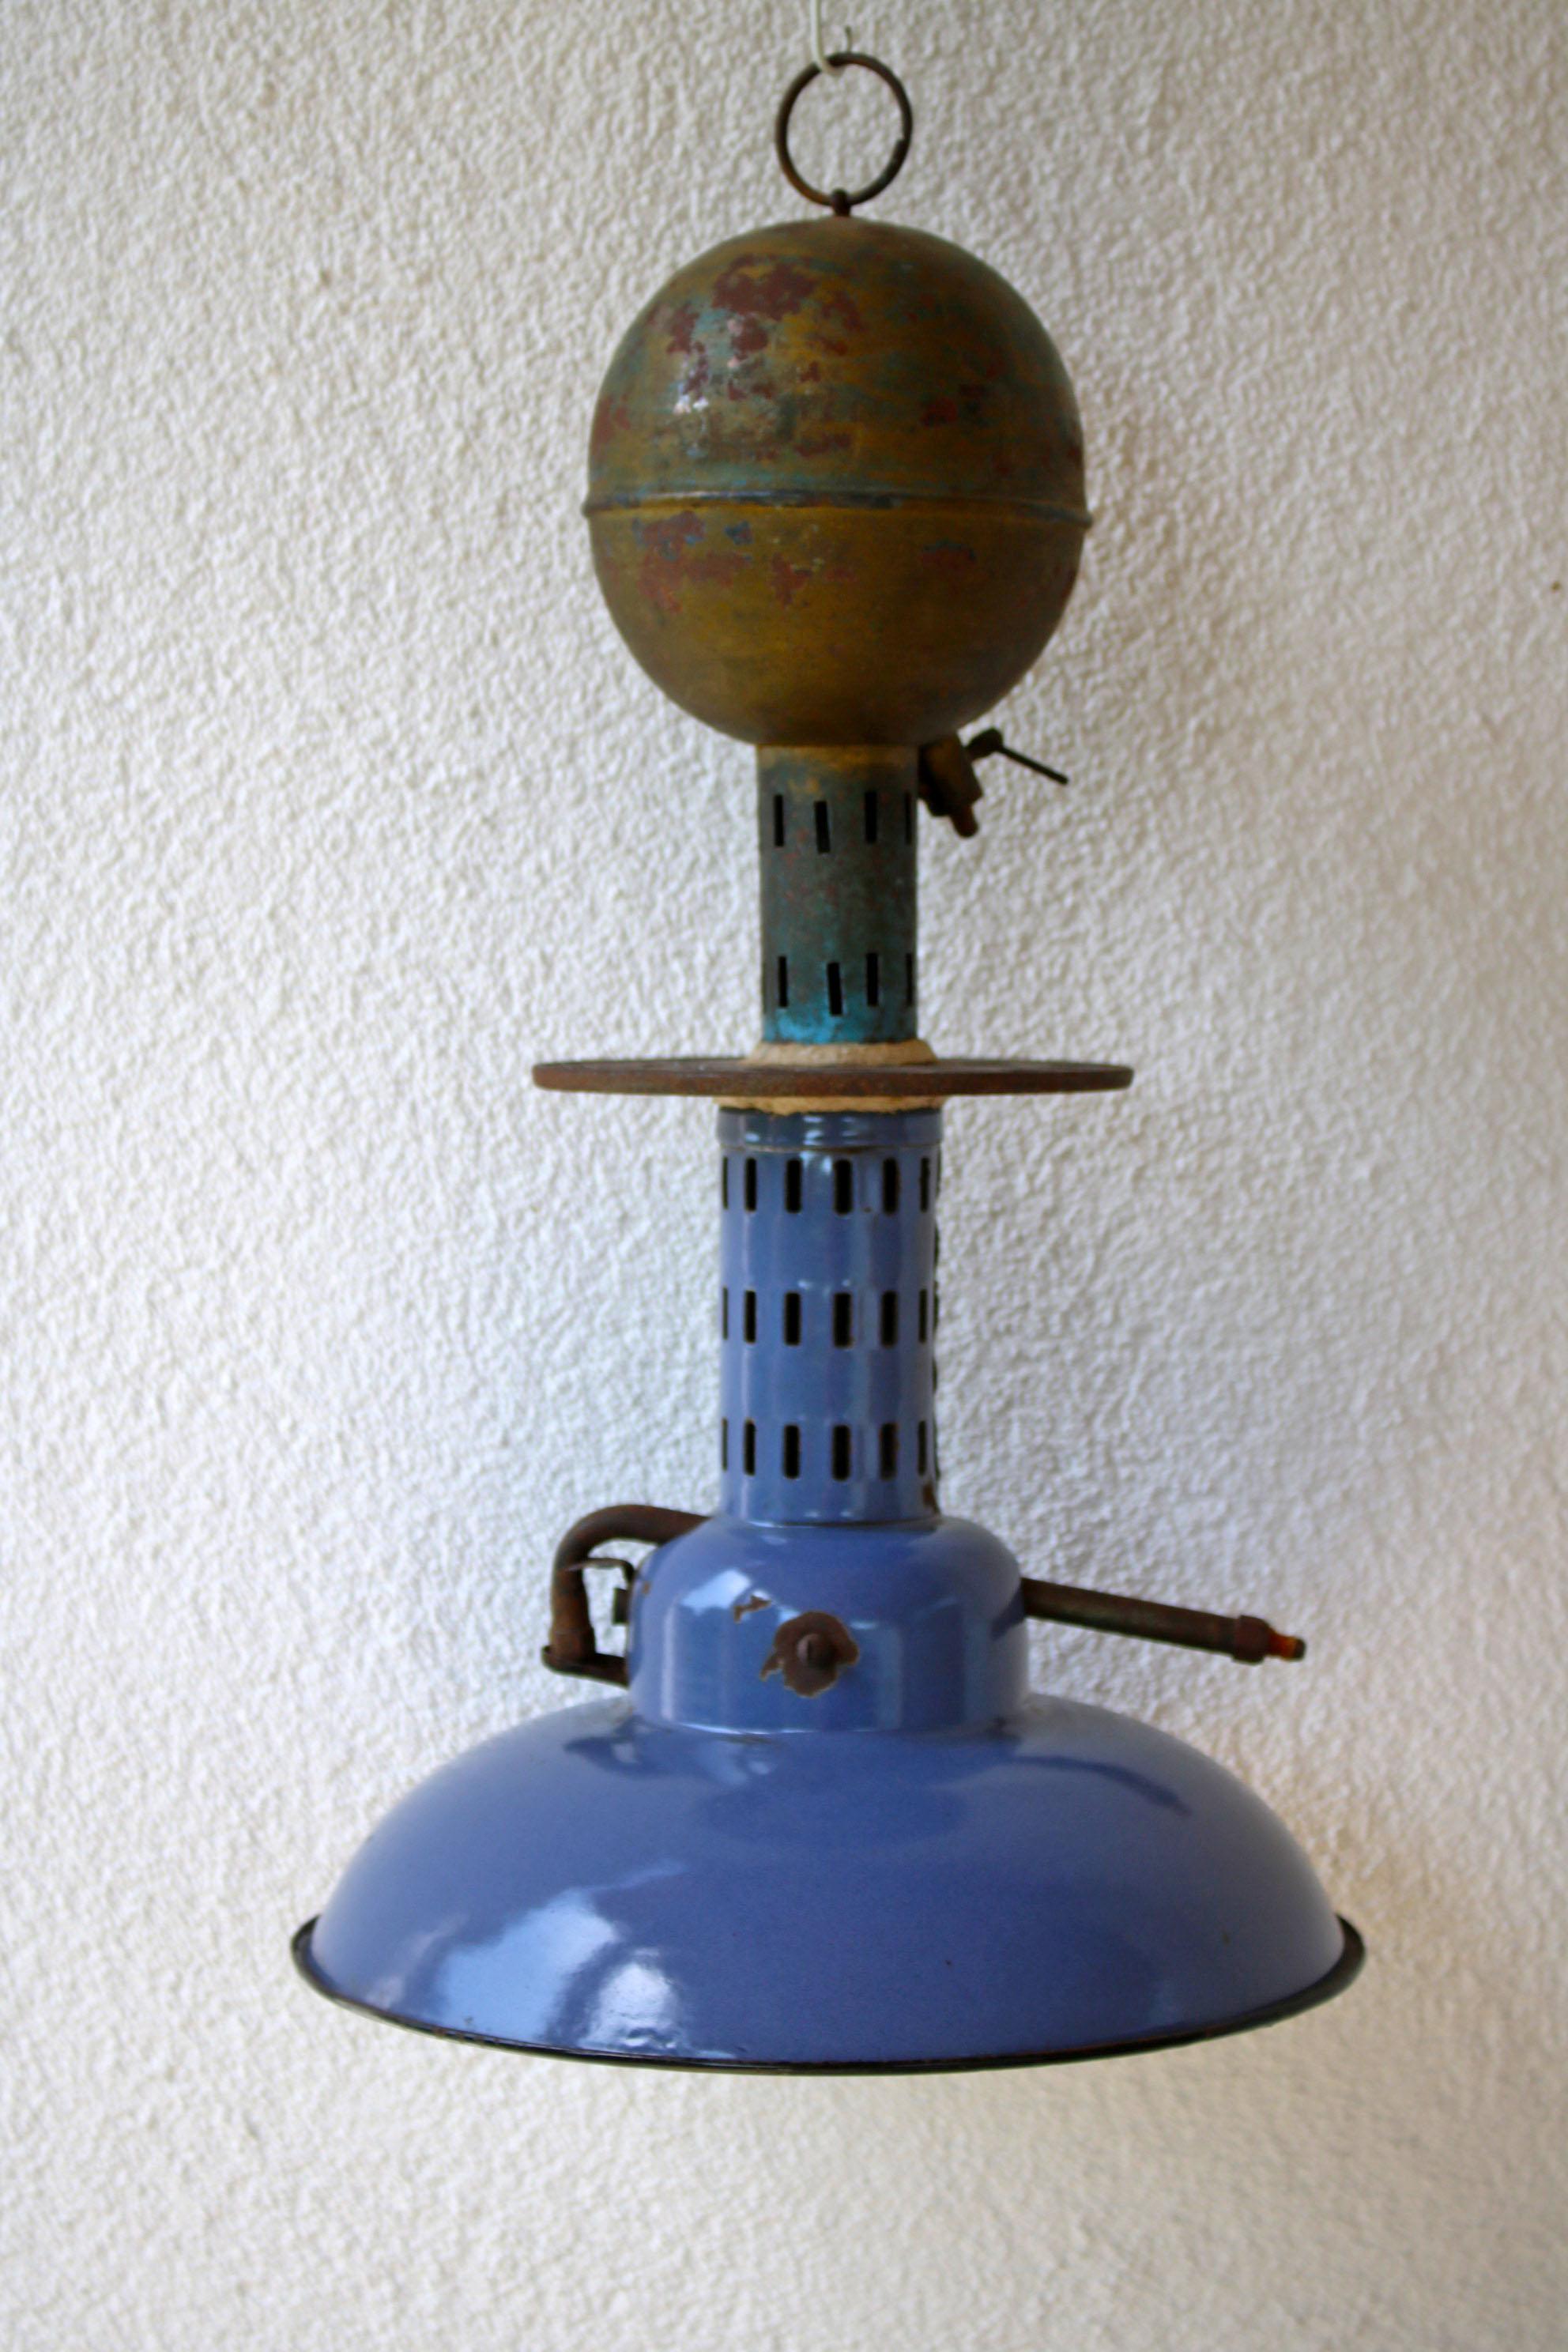 Dies ist eine schöne Hängelampe aus dem späten 19. Jahrhundert, bevor die Elektrizität erfunden wurde, sie verwendet einen flüssigen Brennstoff. Der Lampenschirm ist schön emailliert - die Lampe ist im Originalzustand.